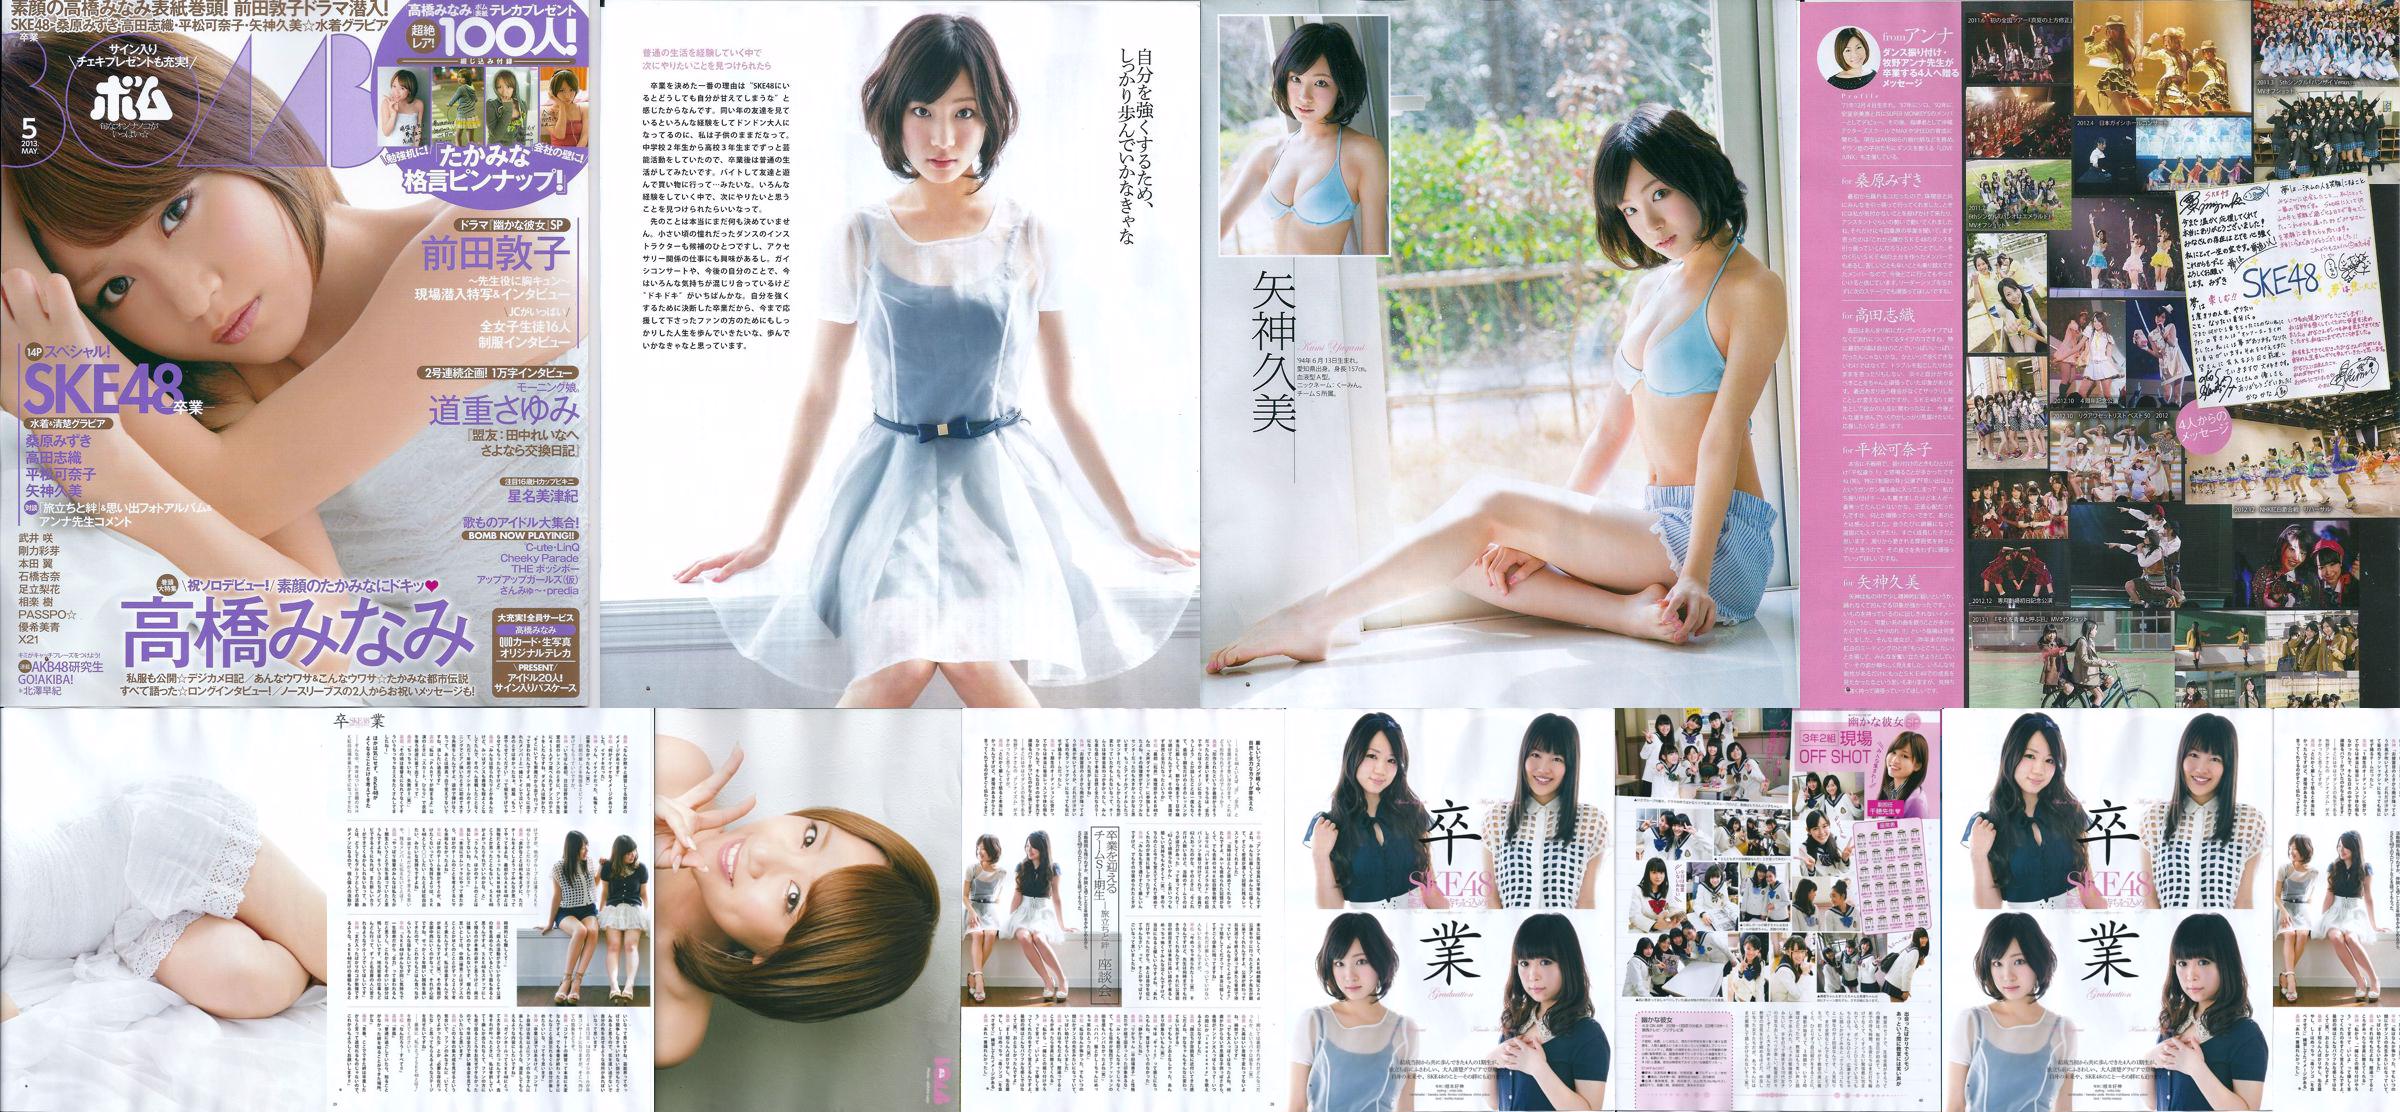 [Bomb Magazine] 2013 No.05 Kumi Yagami Minami Takahashi Atsuko Maeda Photo No.bf5a66 Pagina 7